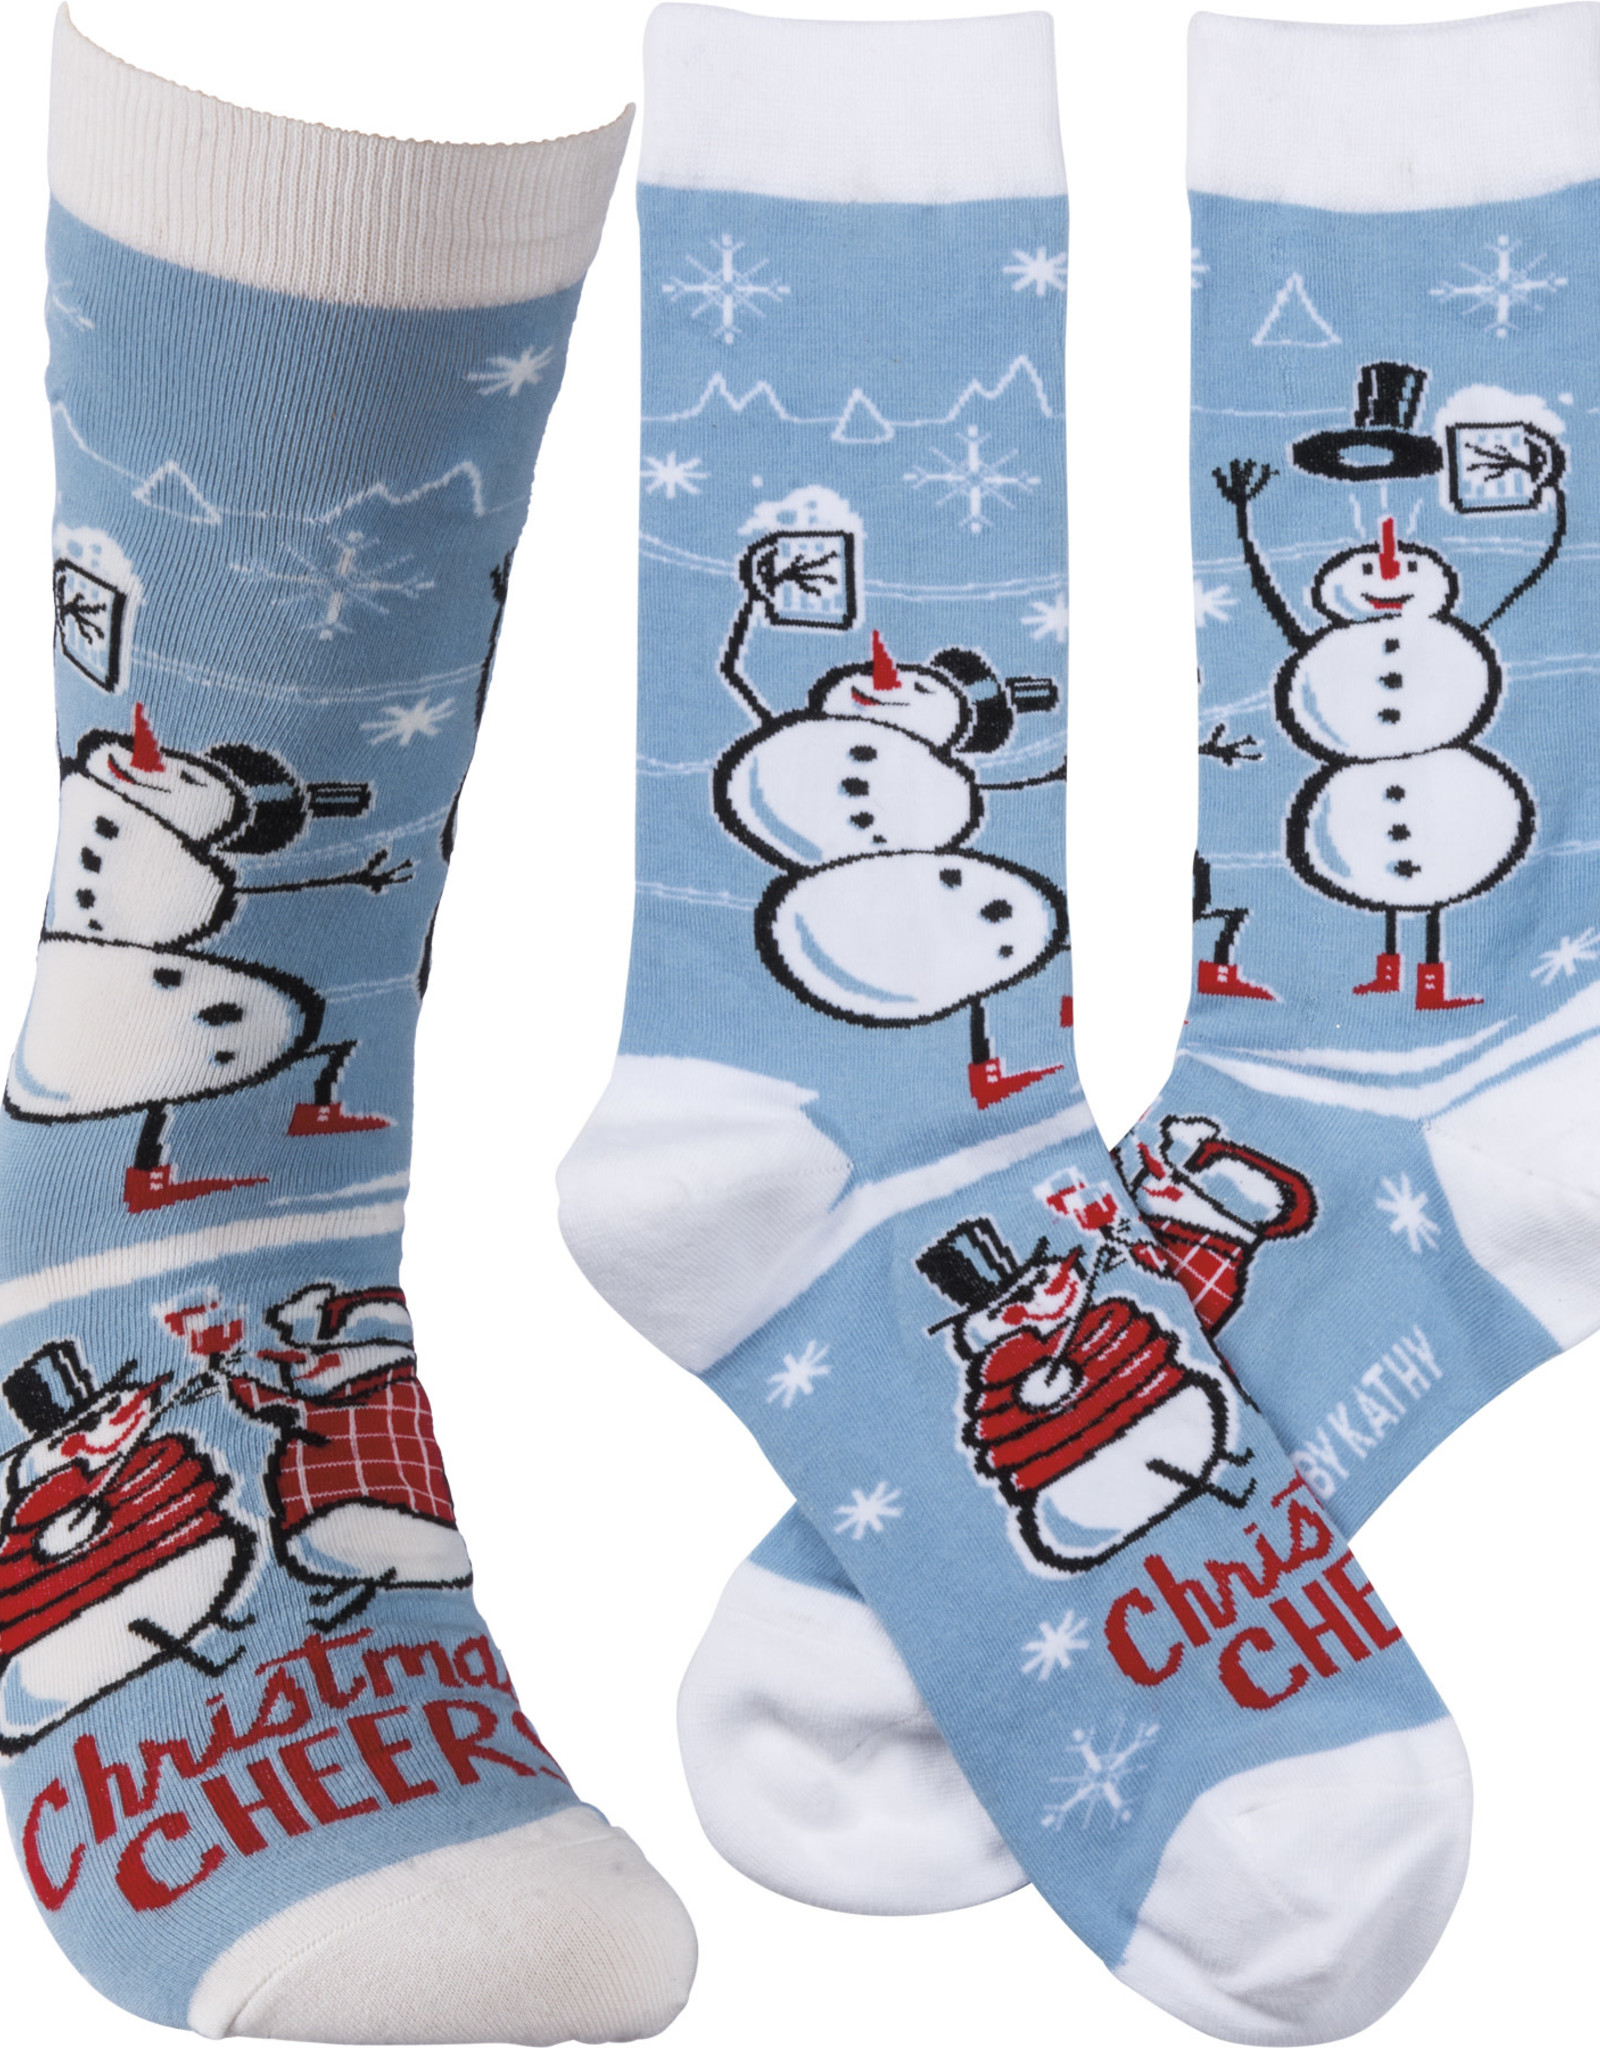 Socks - Christmas Cheer